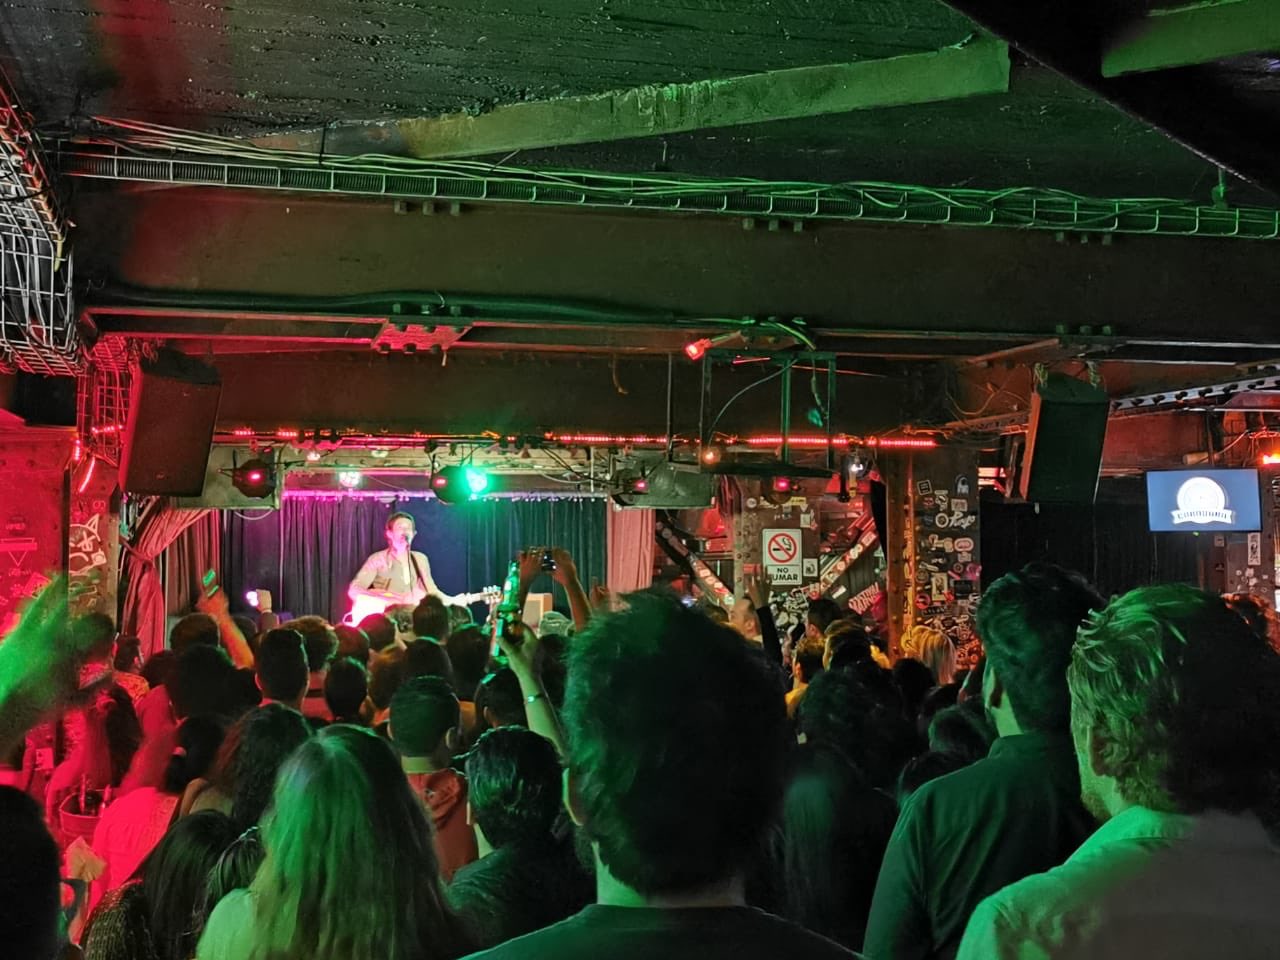 Tras 9 años de rock, bar Caradura cierra sus puertas por inseguridad en la Condesa